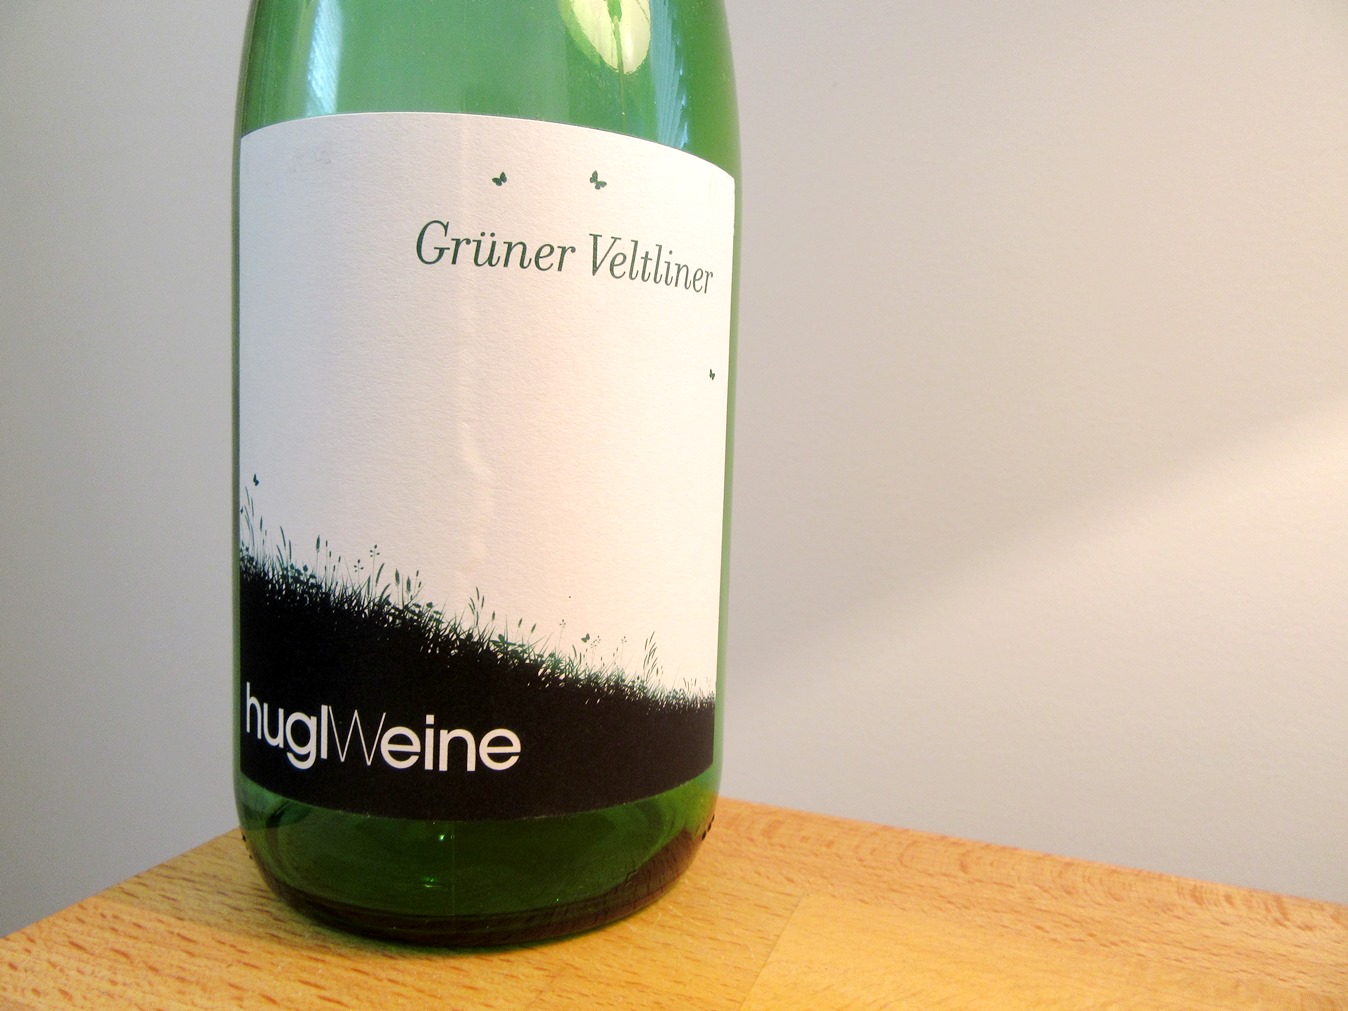 Hugl Weine, Grüner Veltliner 2015, Niederösterreich, Austria, Wine Casual